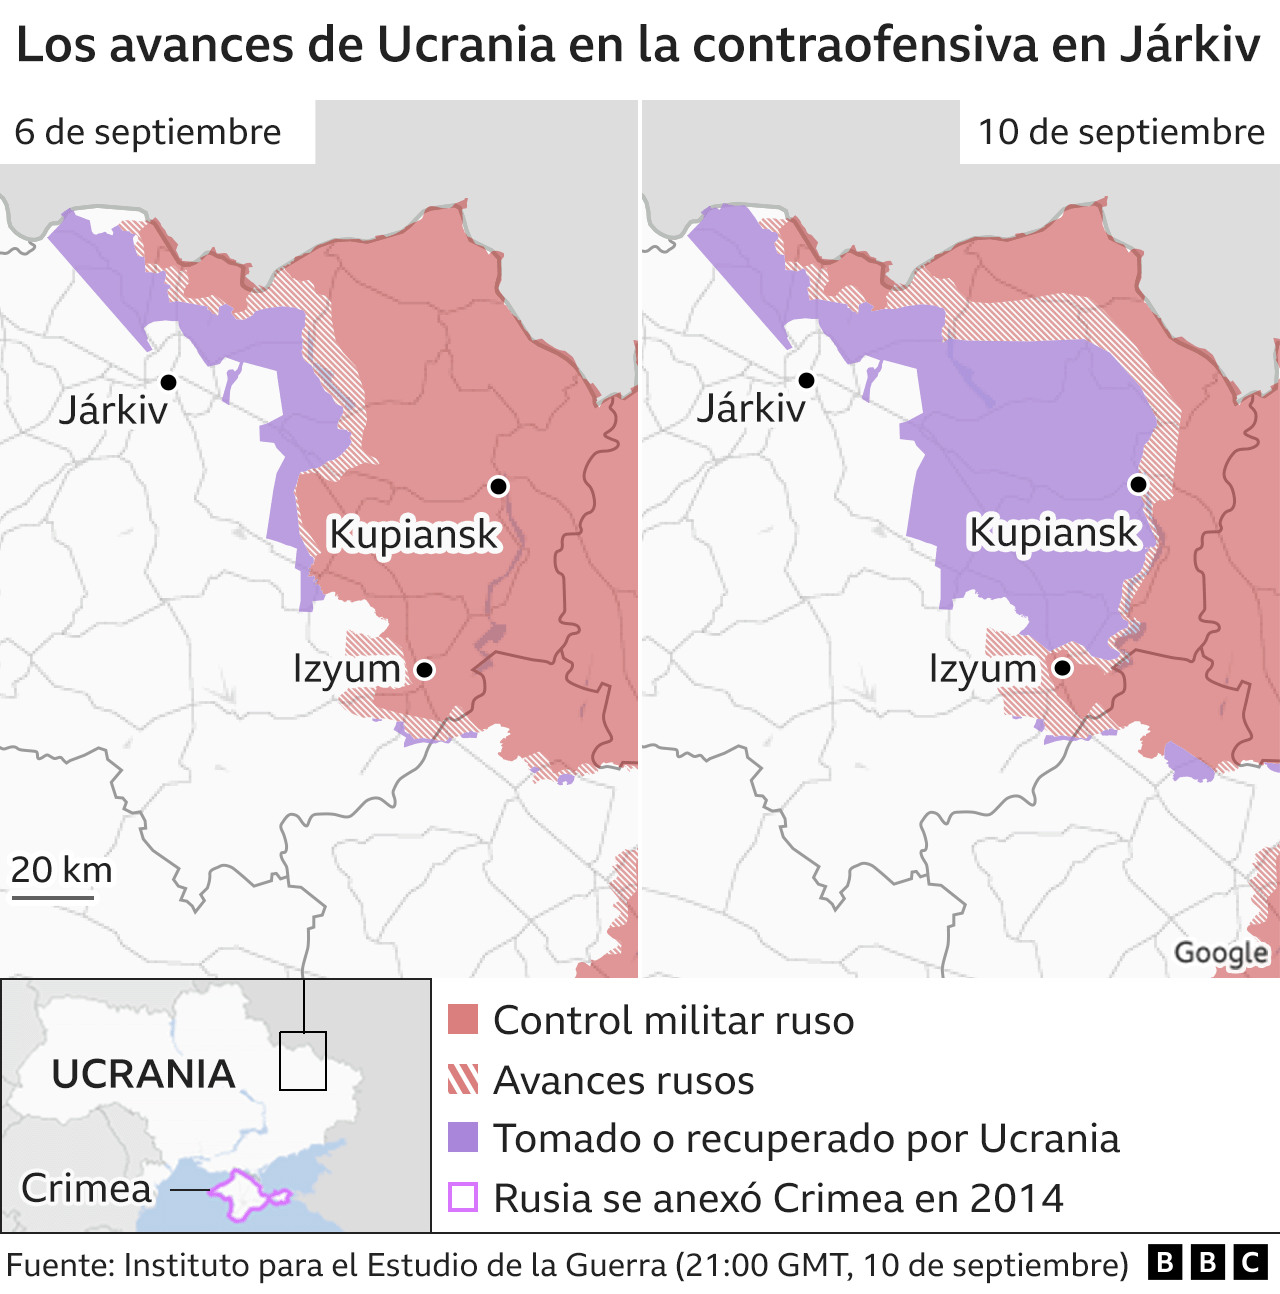 แผนที่ความก้าวหน้าของยูเครนทางตอนใต้ของประเทศ